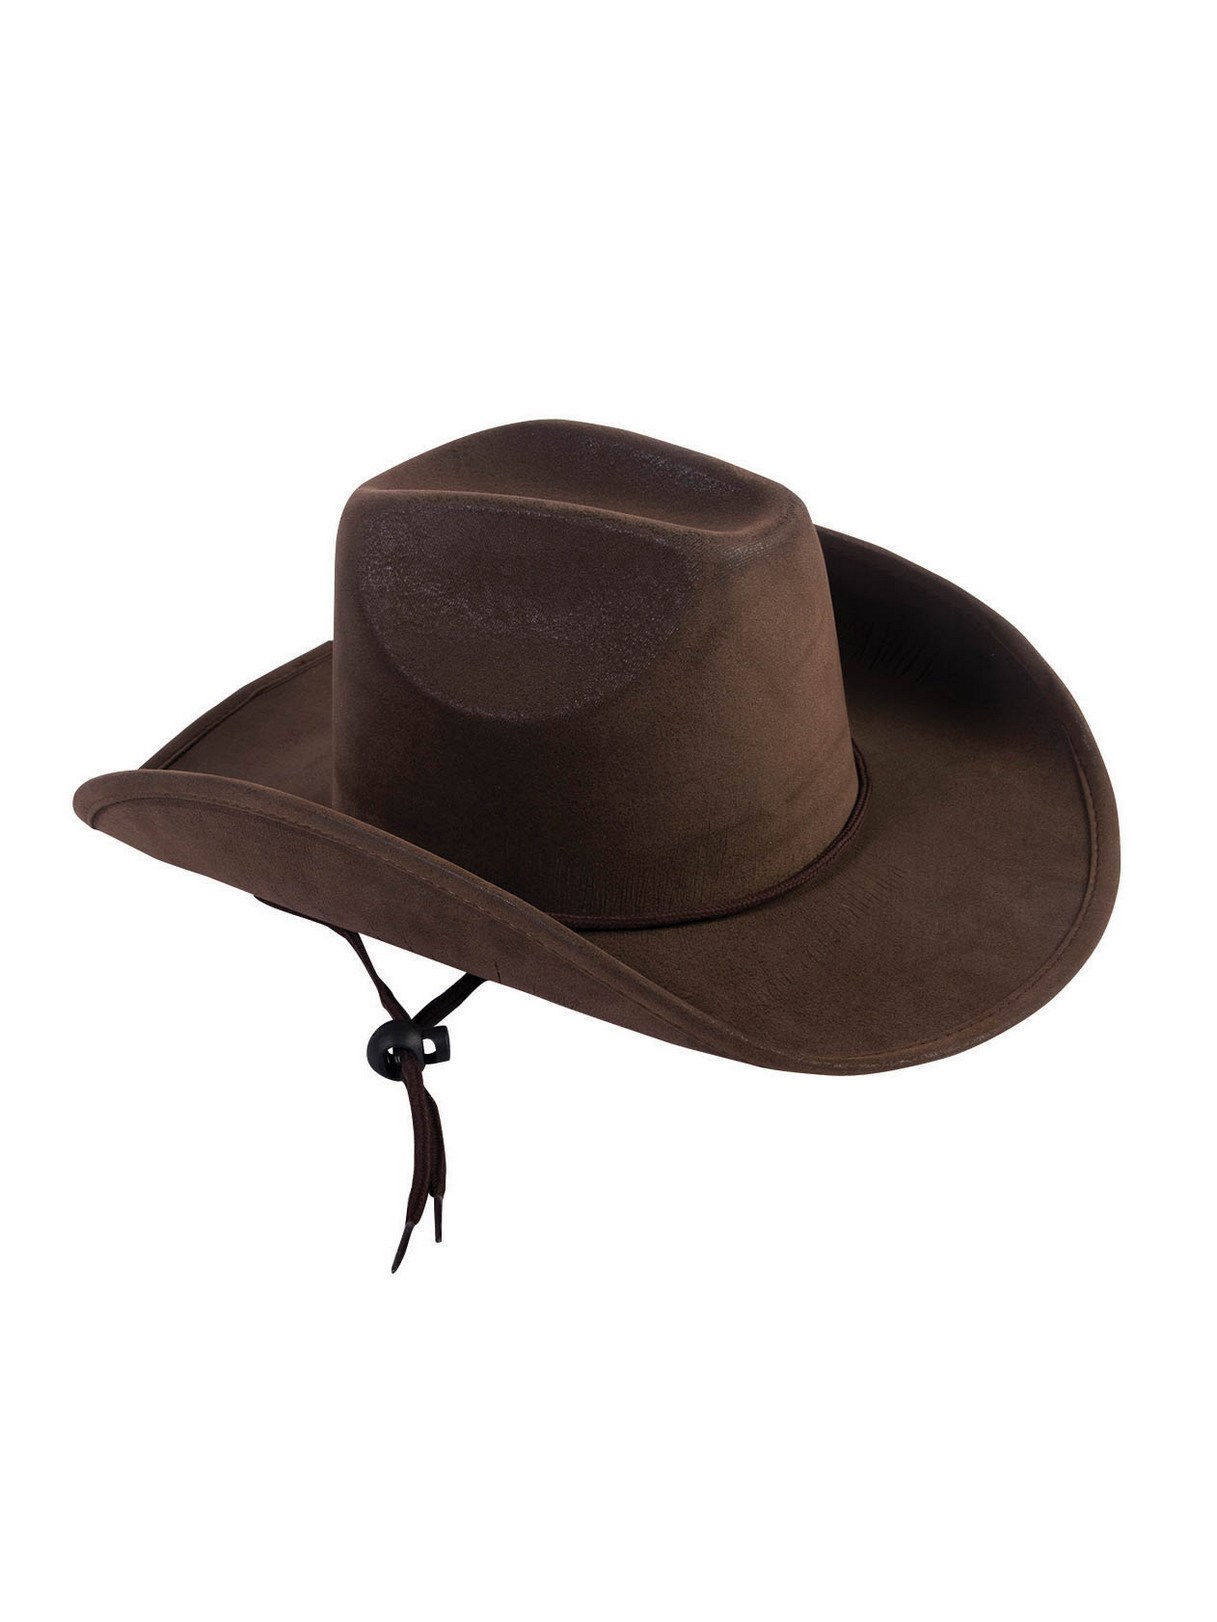 Child Cowboy Hat Brown